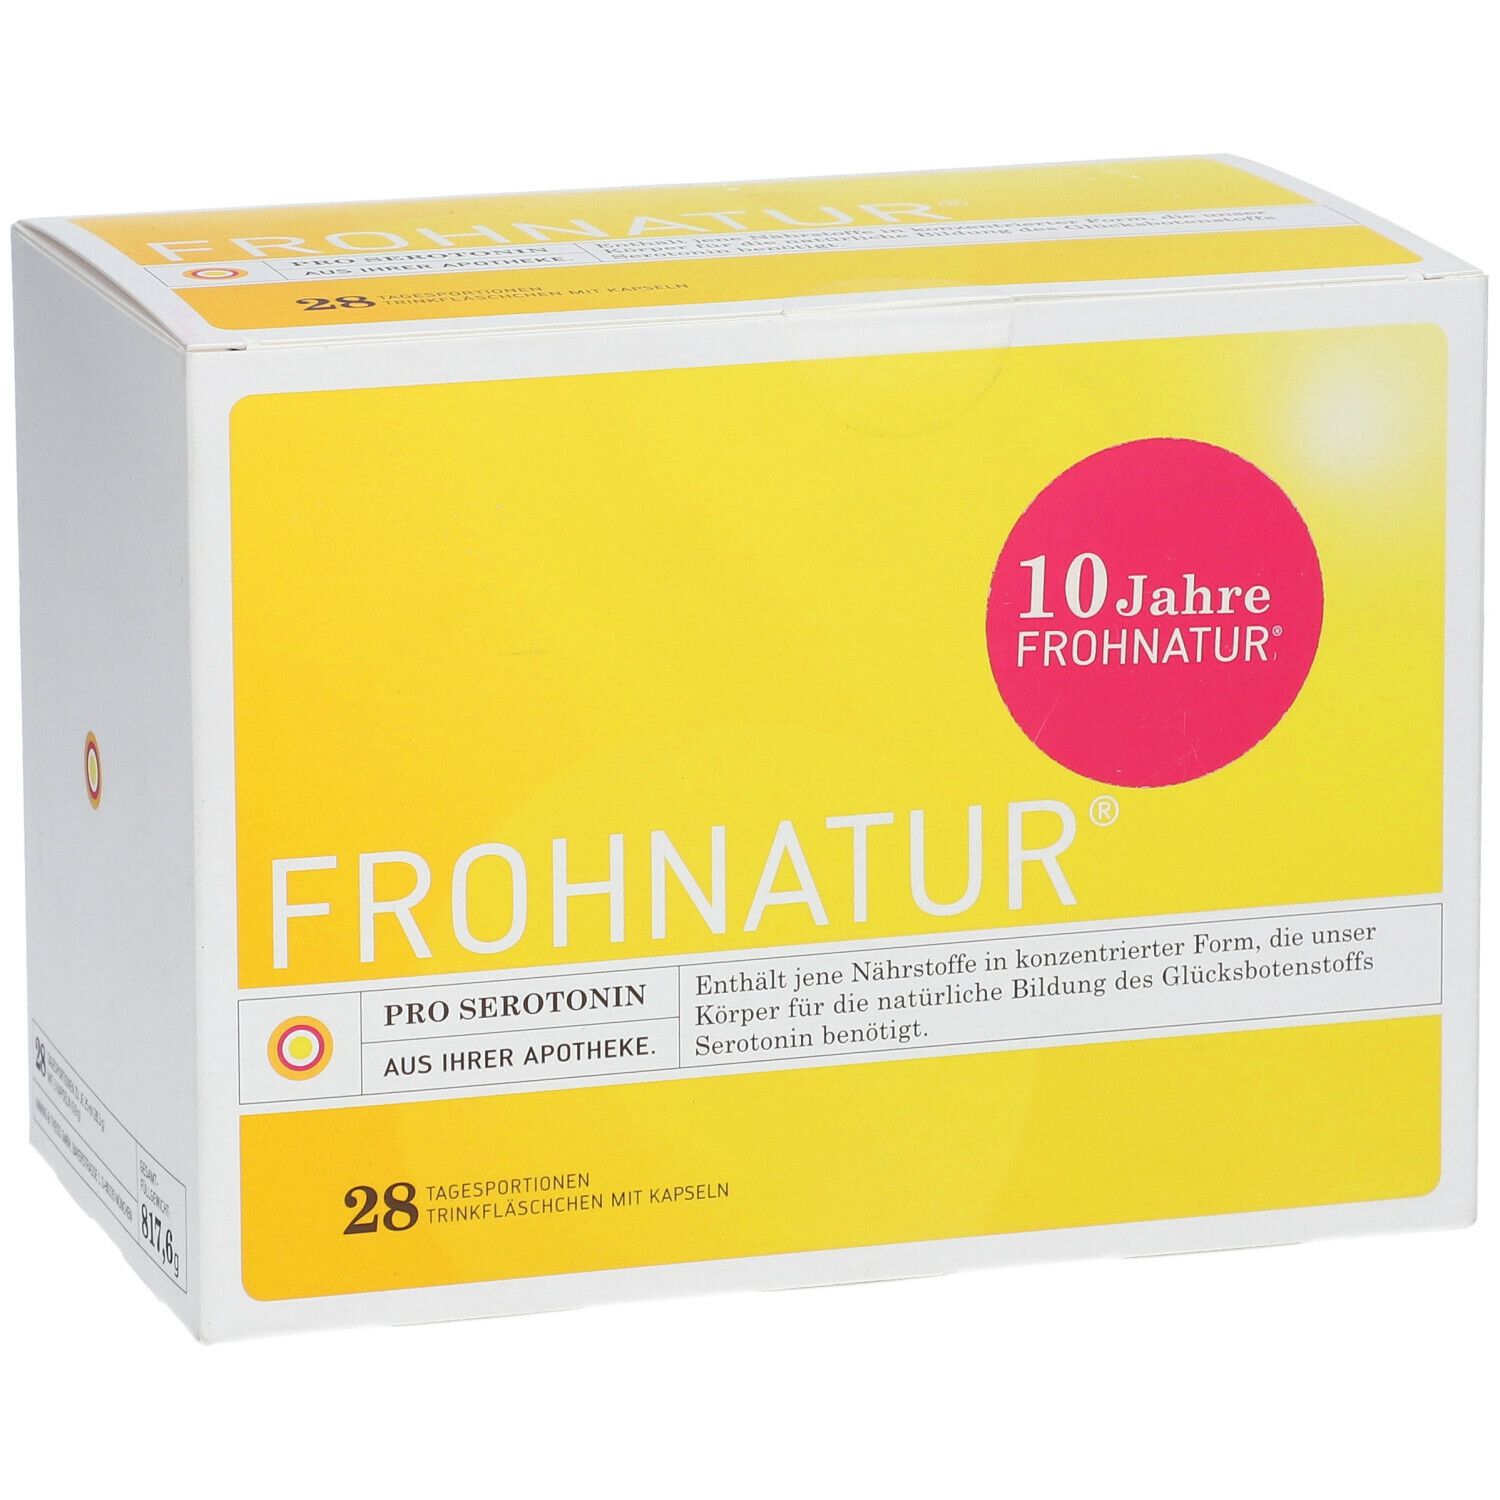 FROHNATUR® Pro Serotonin